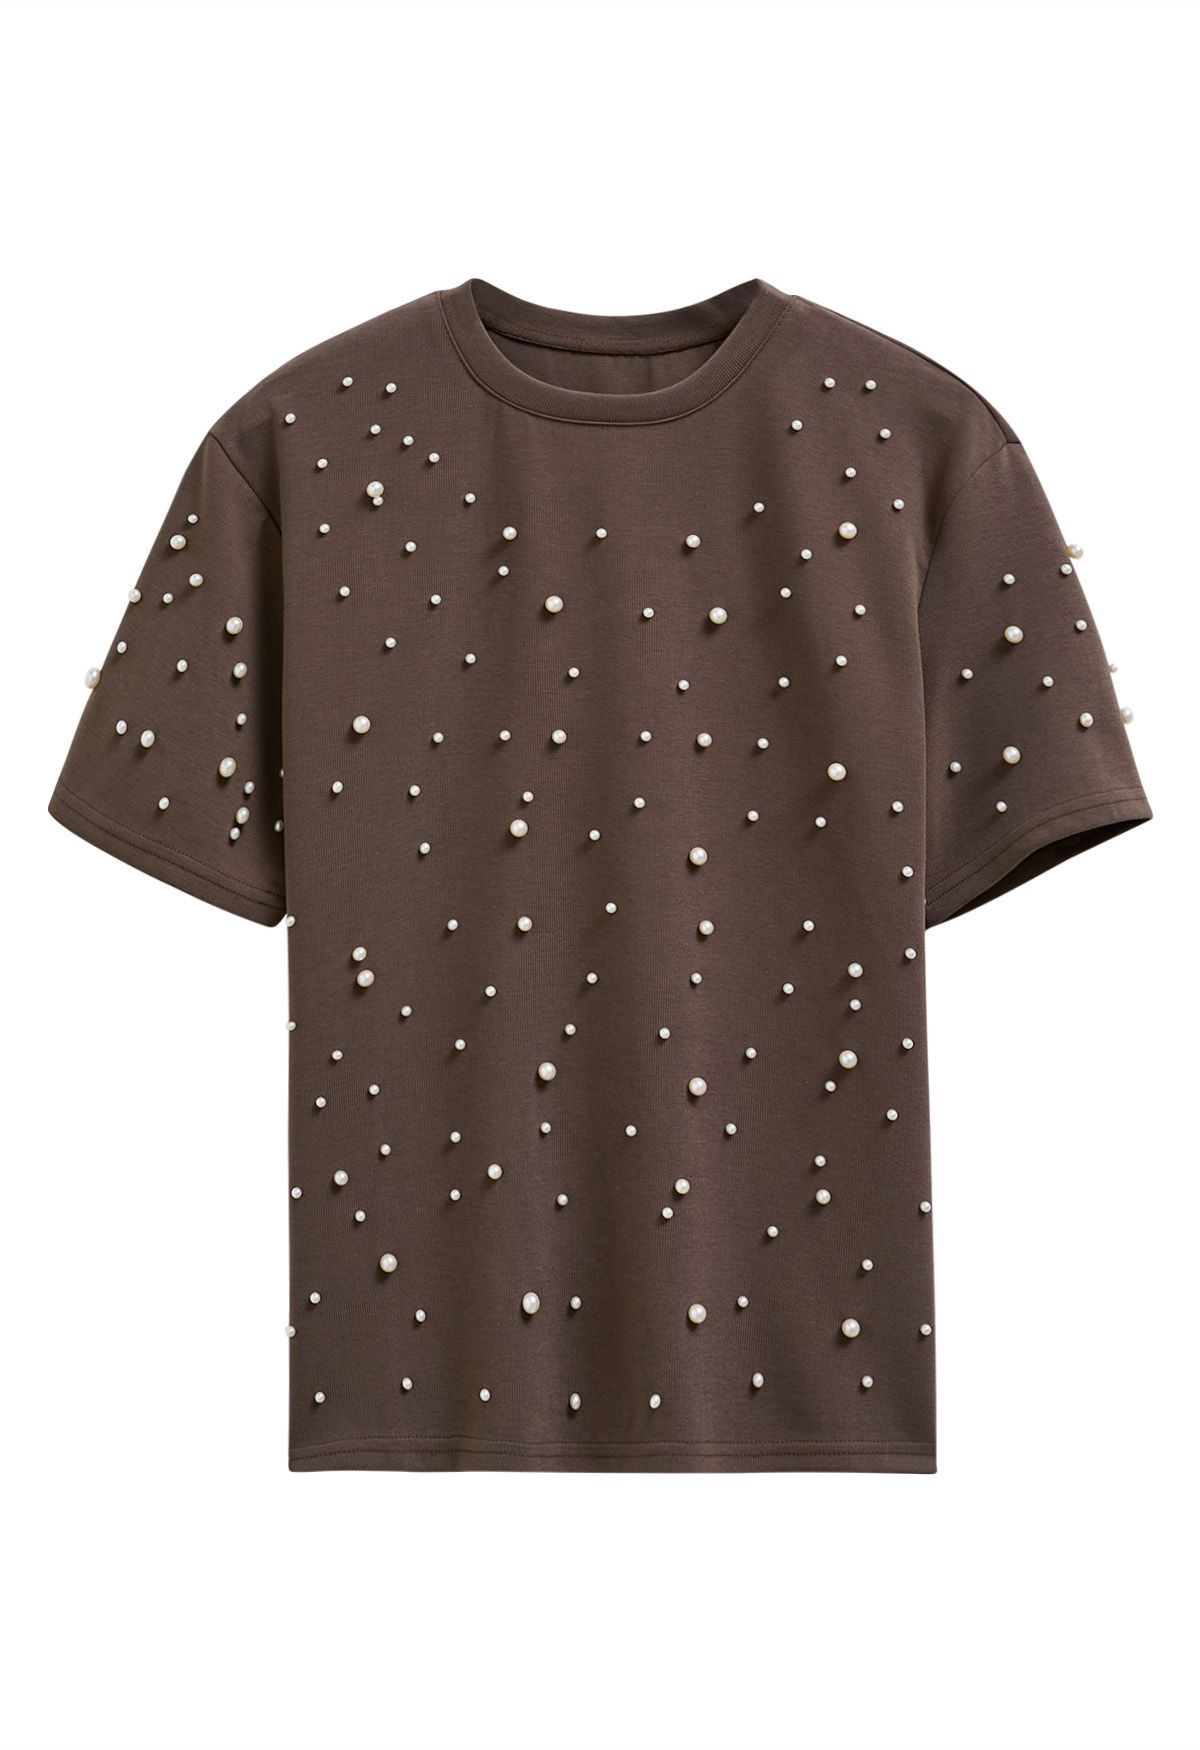 Camiseta sofisticada con ribete de perlas en marrón